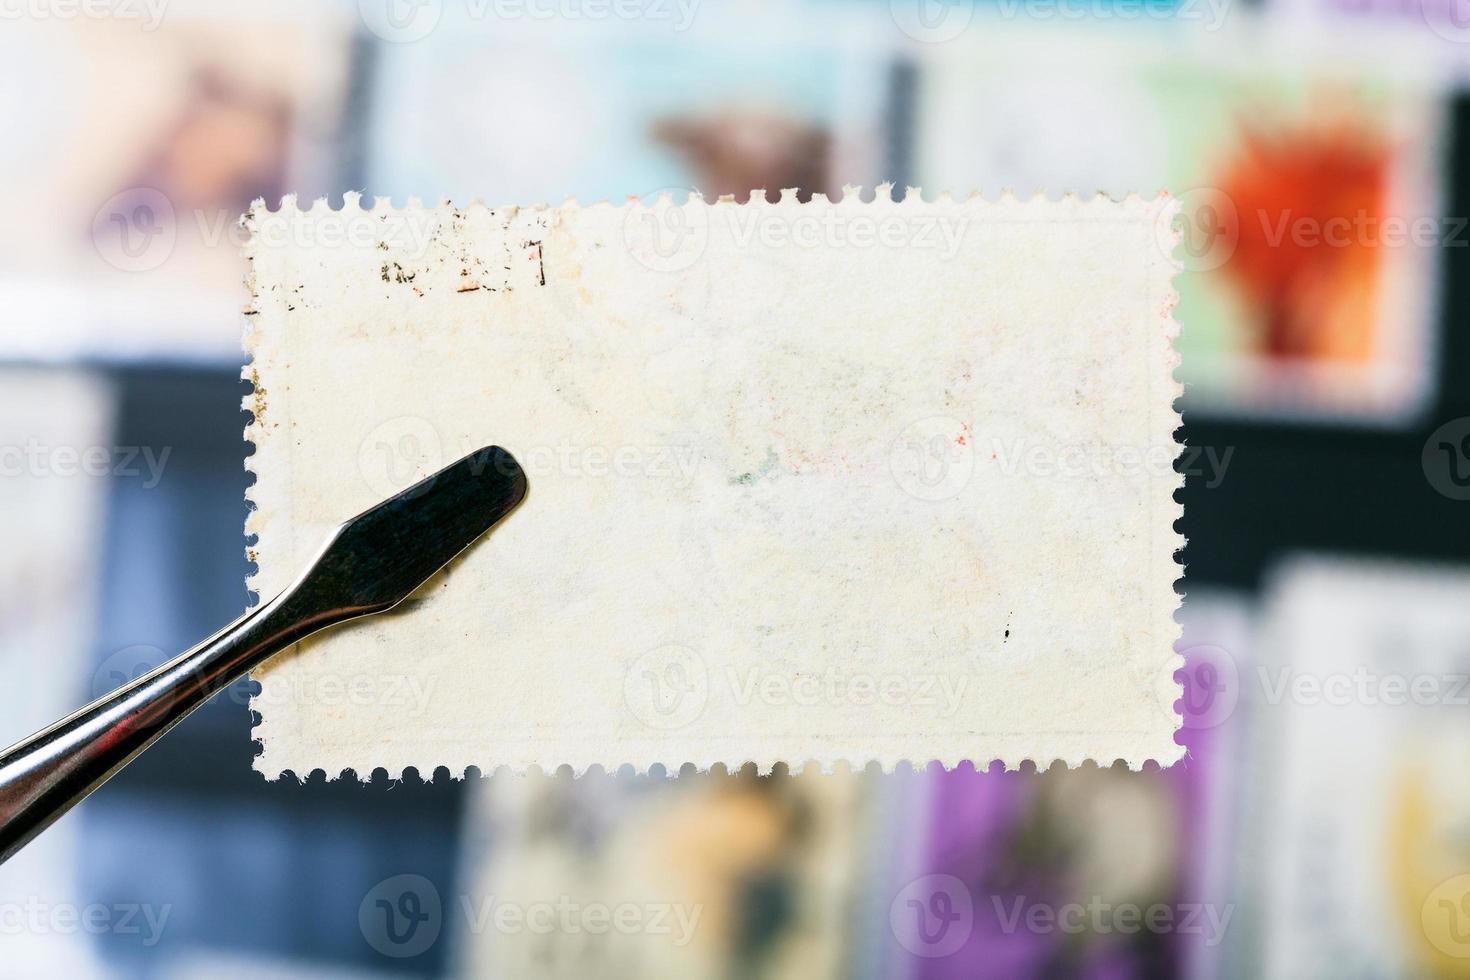 les pinces tiennent le timbre-poste avec le verso inutilisé photo